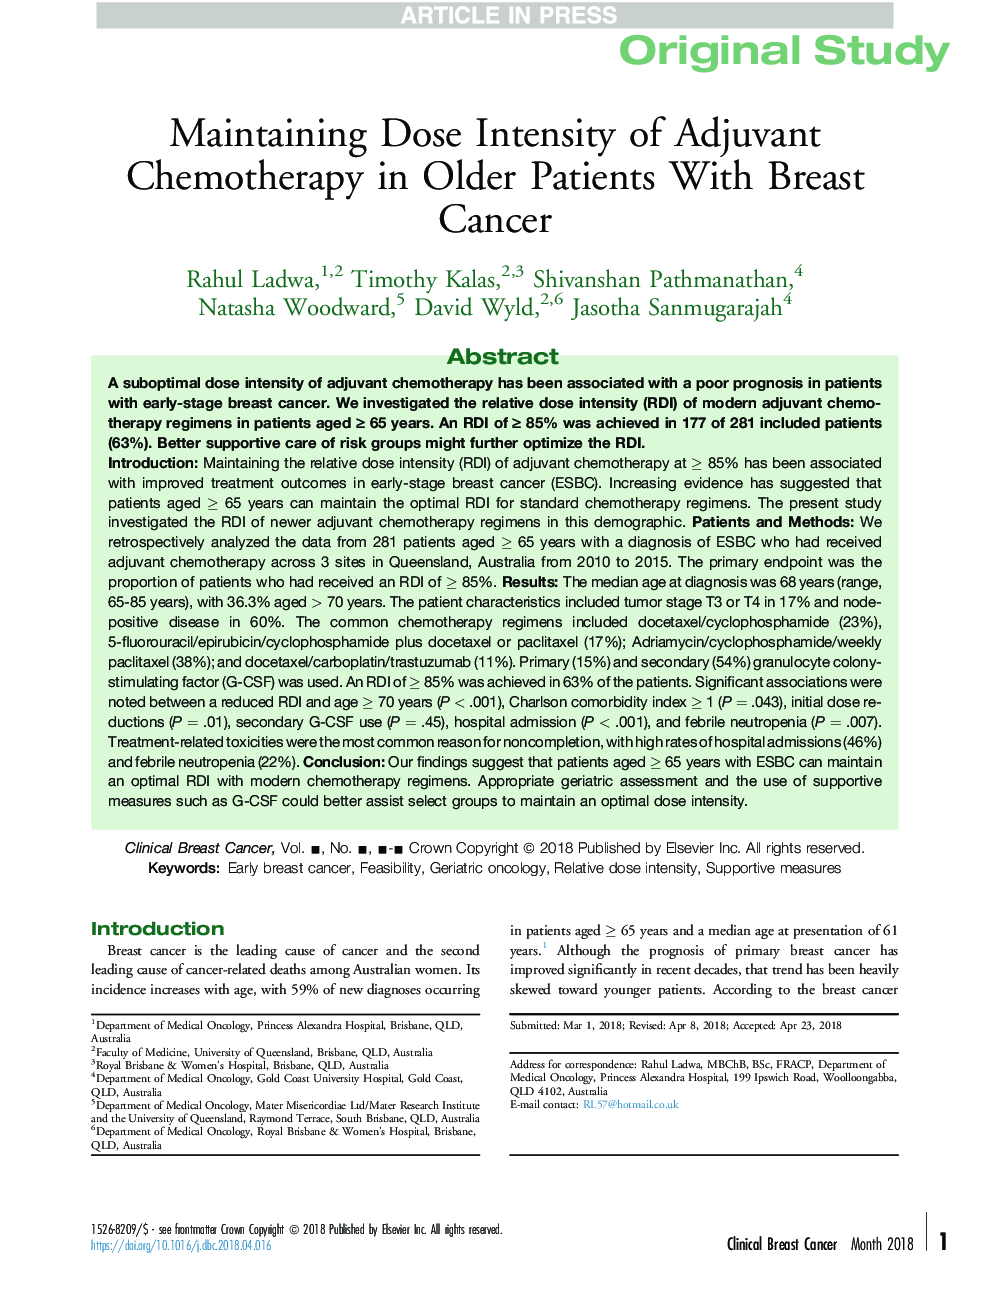 نگهداری شدت درد از شیمی درمانی ادجوانت در بیماران سالمند مبتلا به سرطان پستان